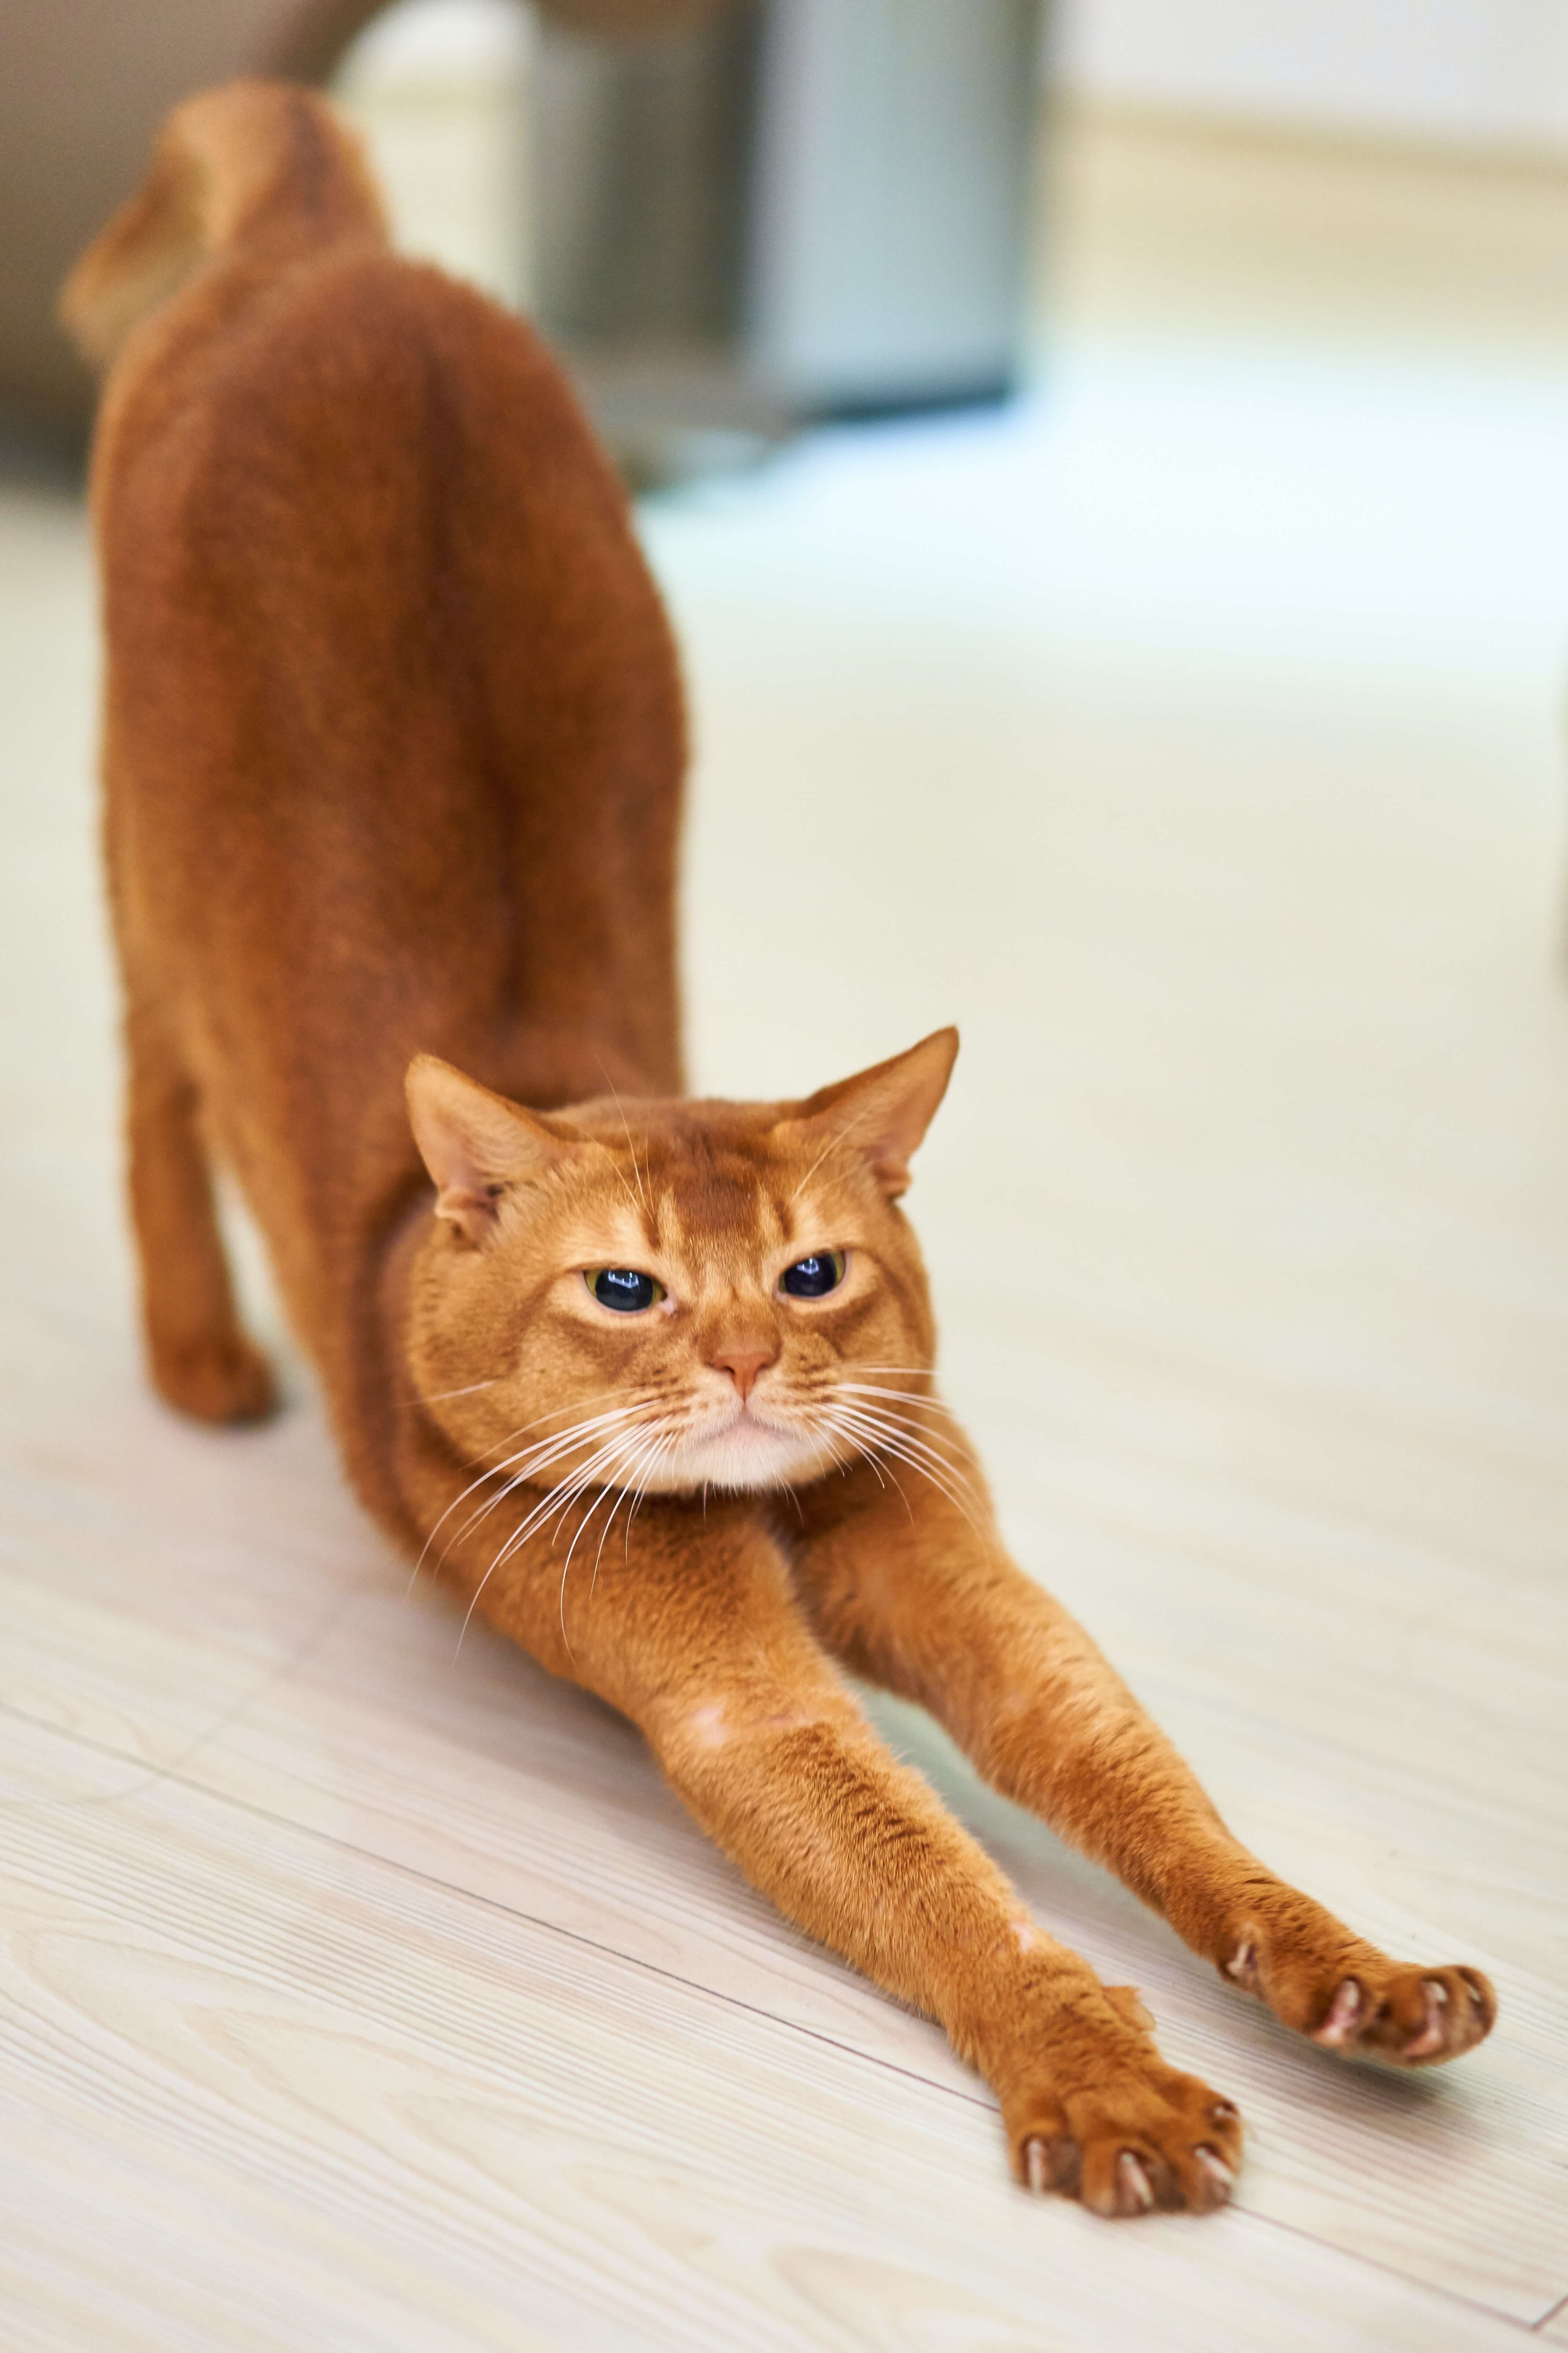 A stretching cat